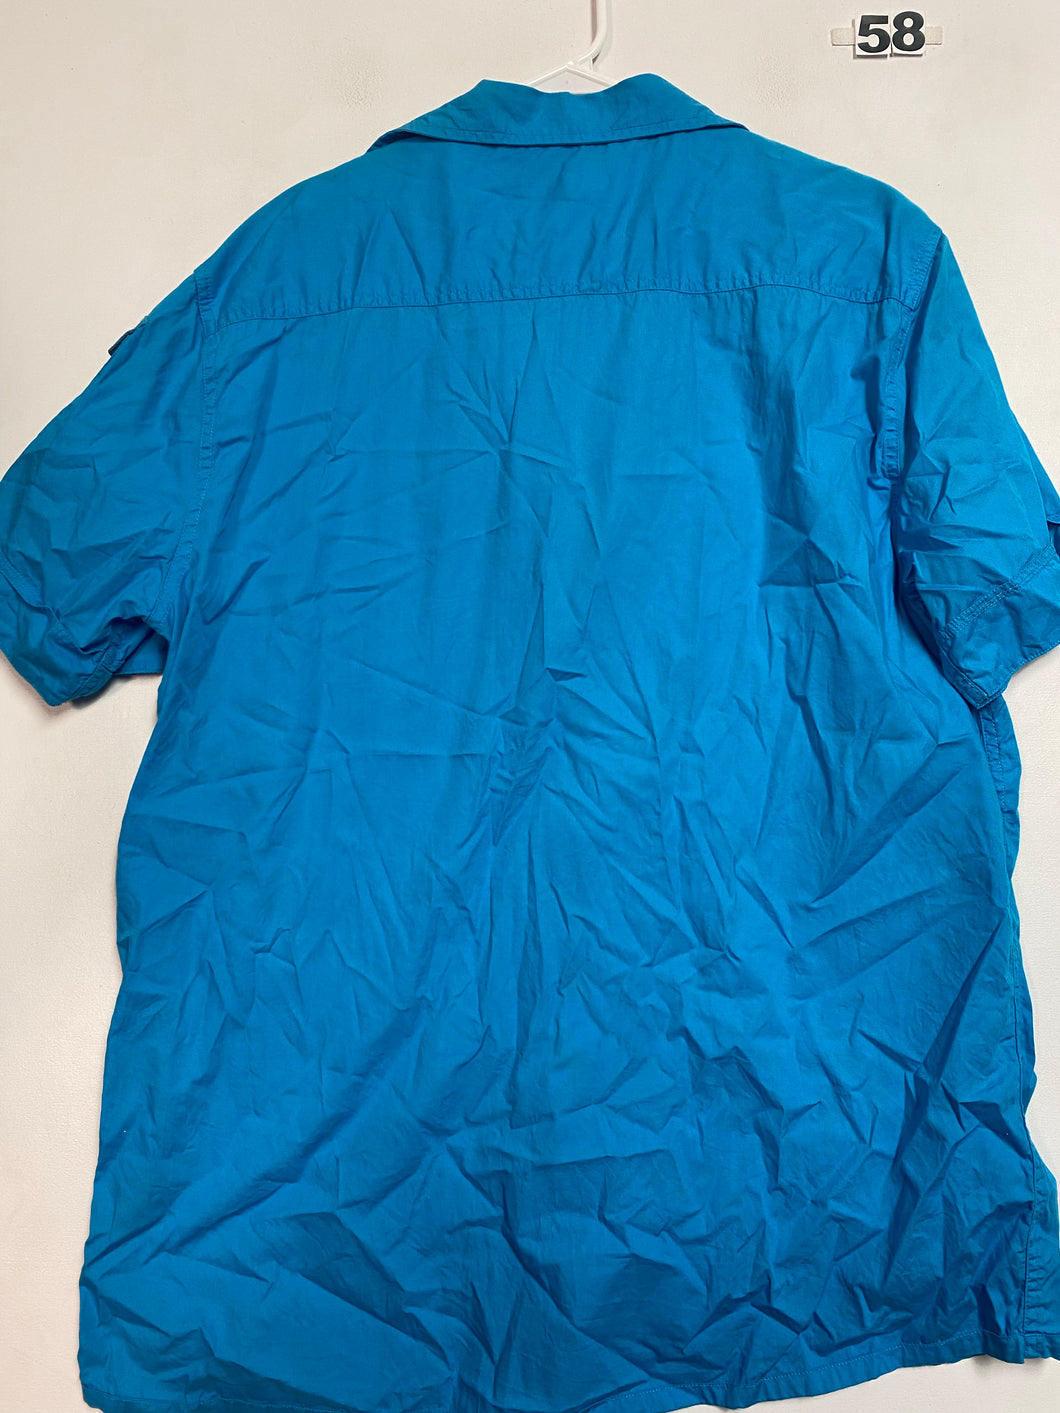 Men’s XL Blue Shirt